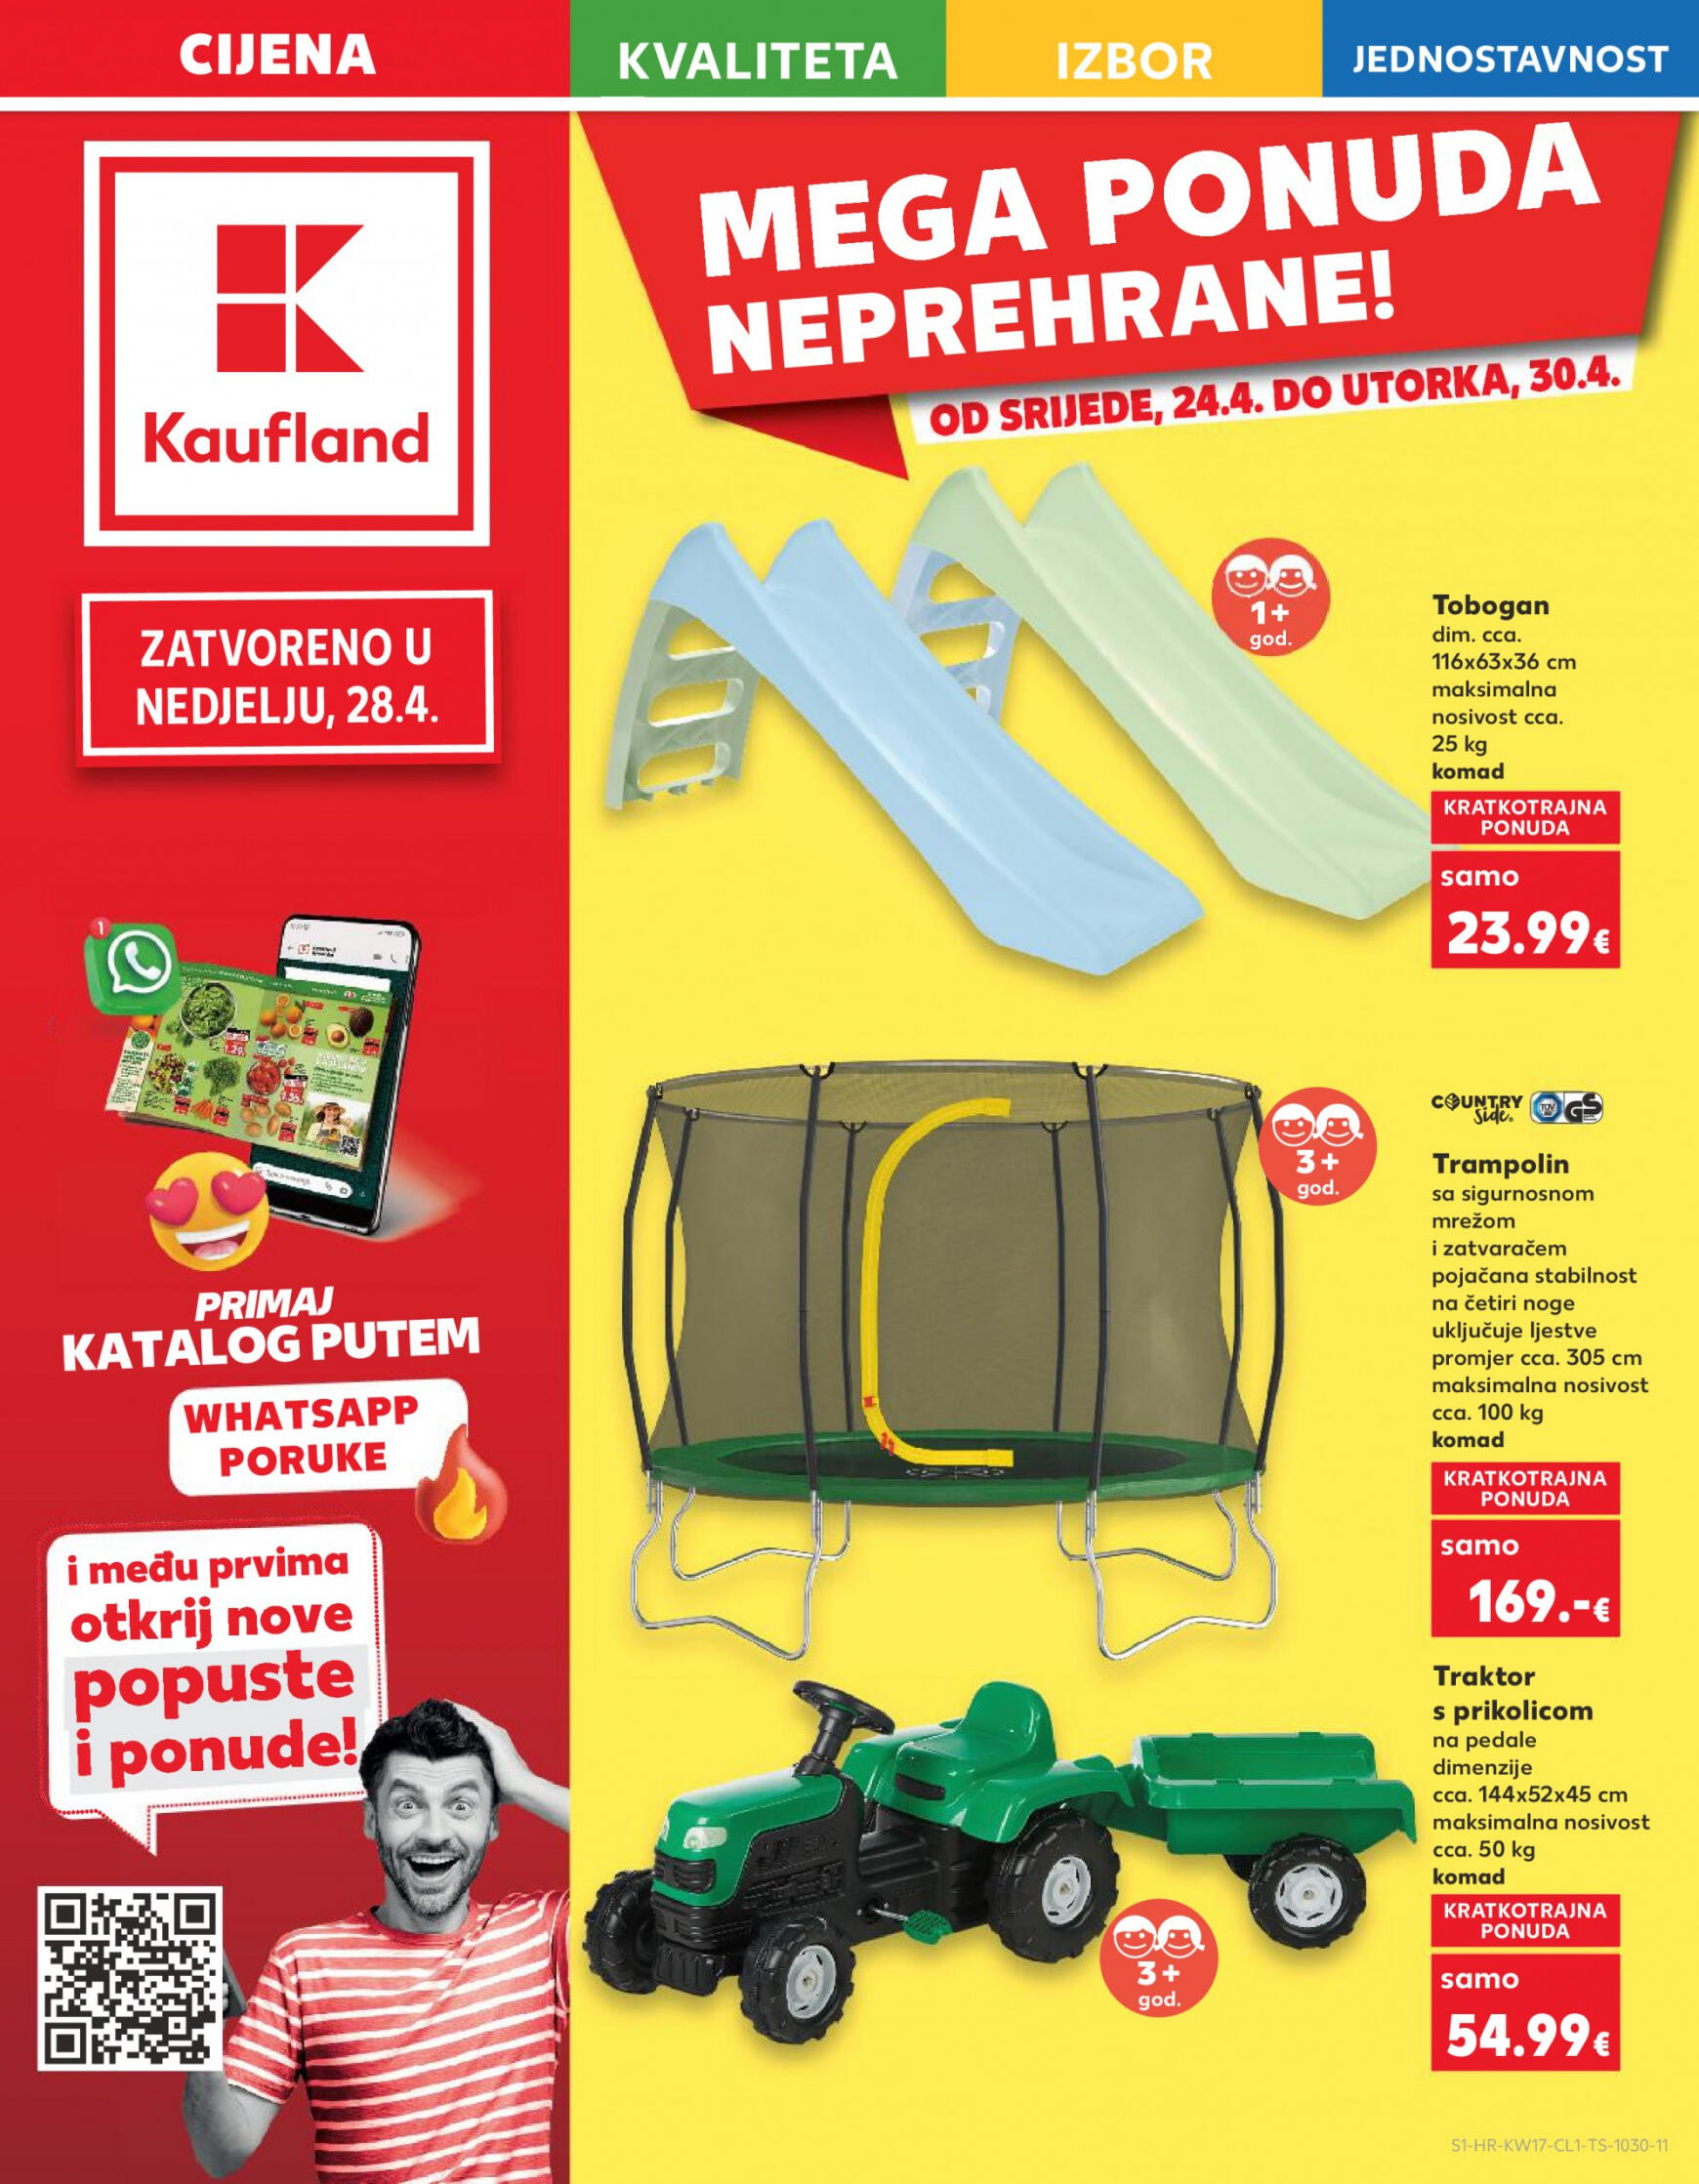 kaufland - Novi katalog Kaufland 24.04. - 30.04. - page: 1